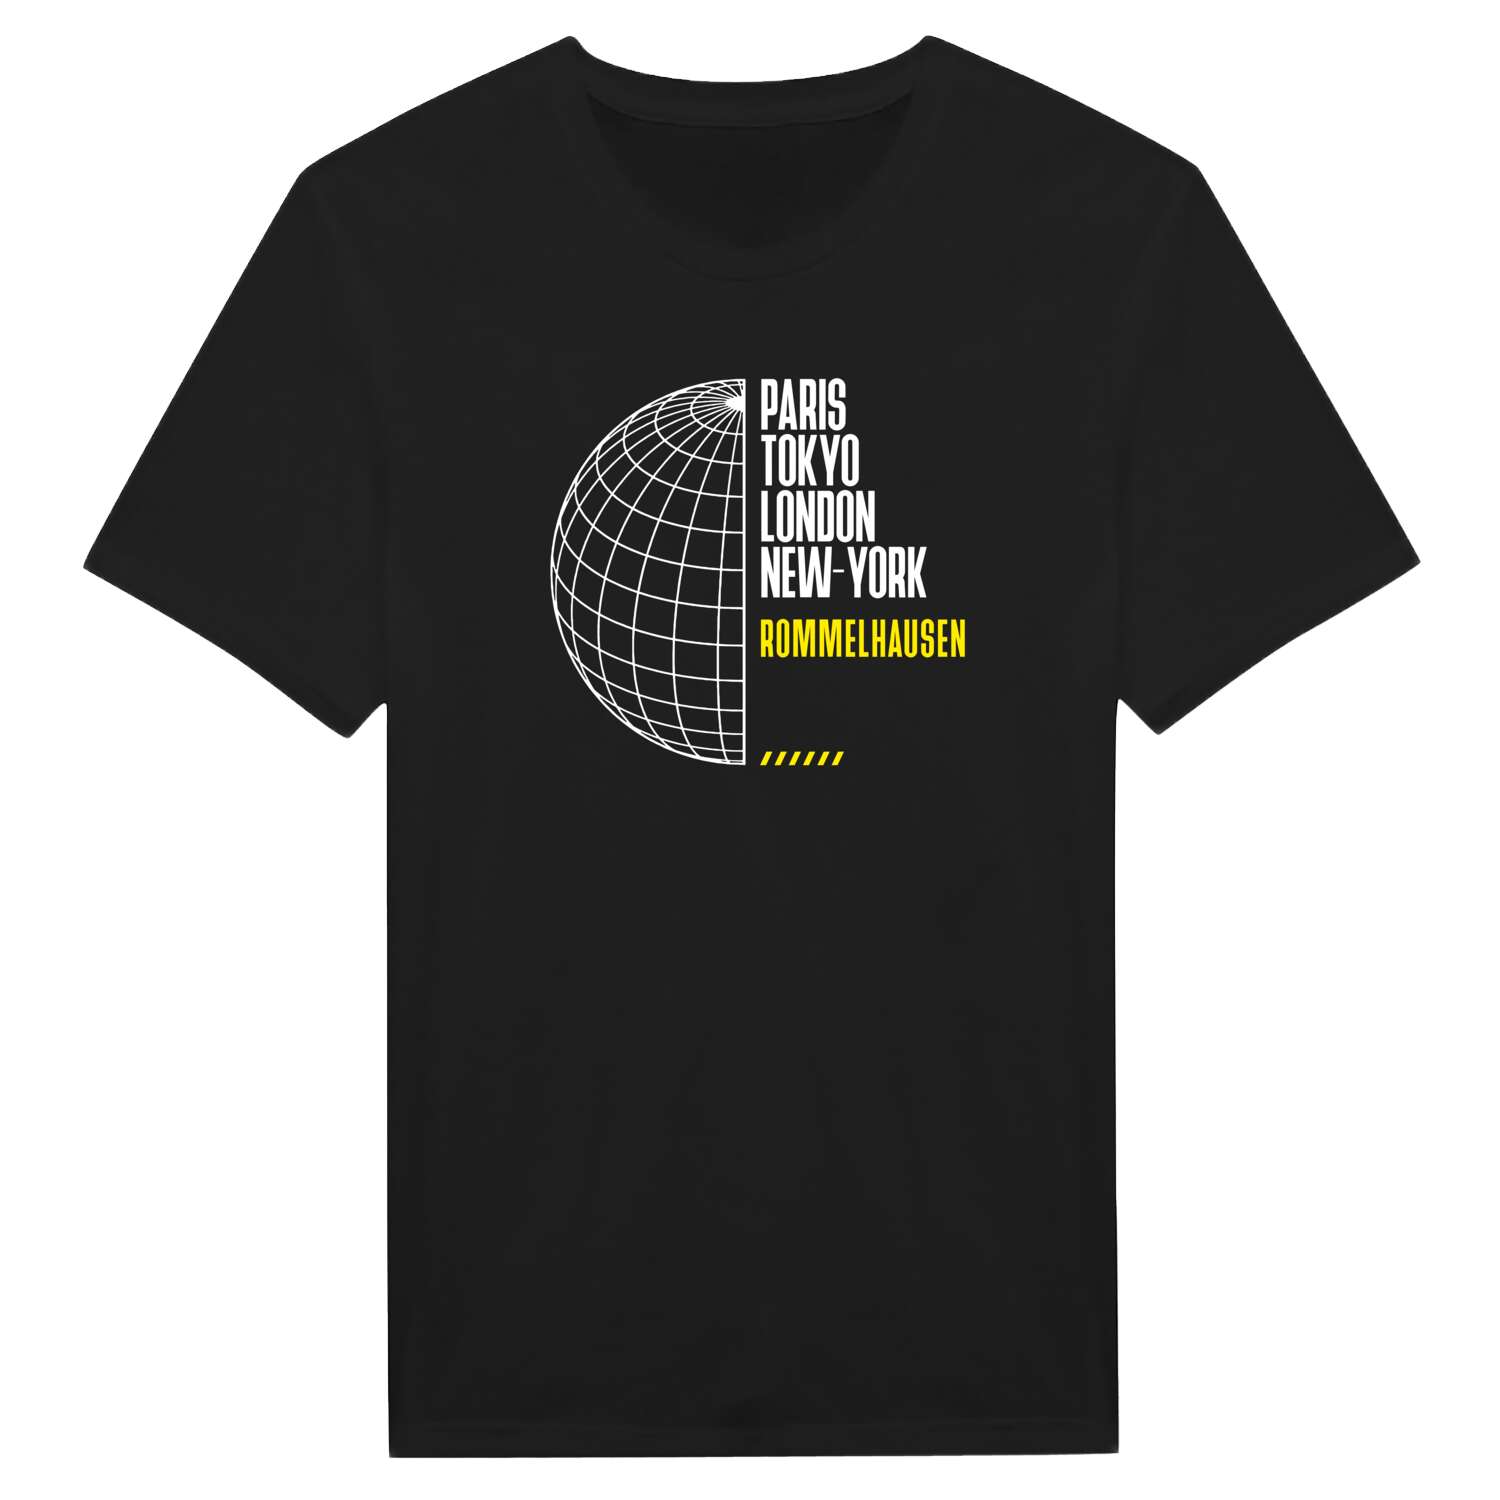 Rommelhausen T-Shirt »Paris Tokyo London«